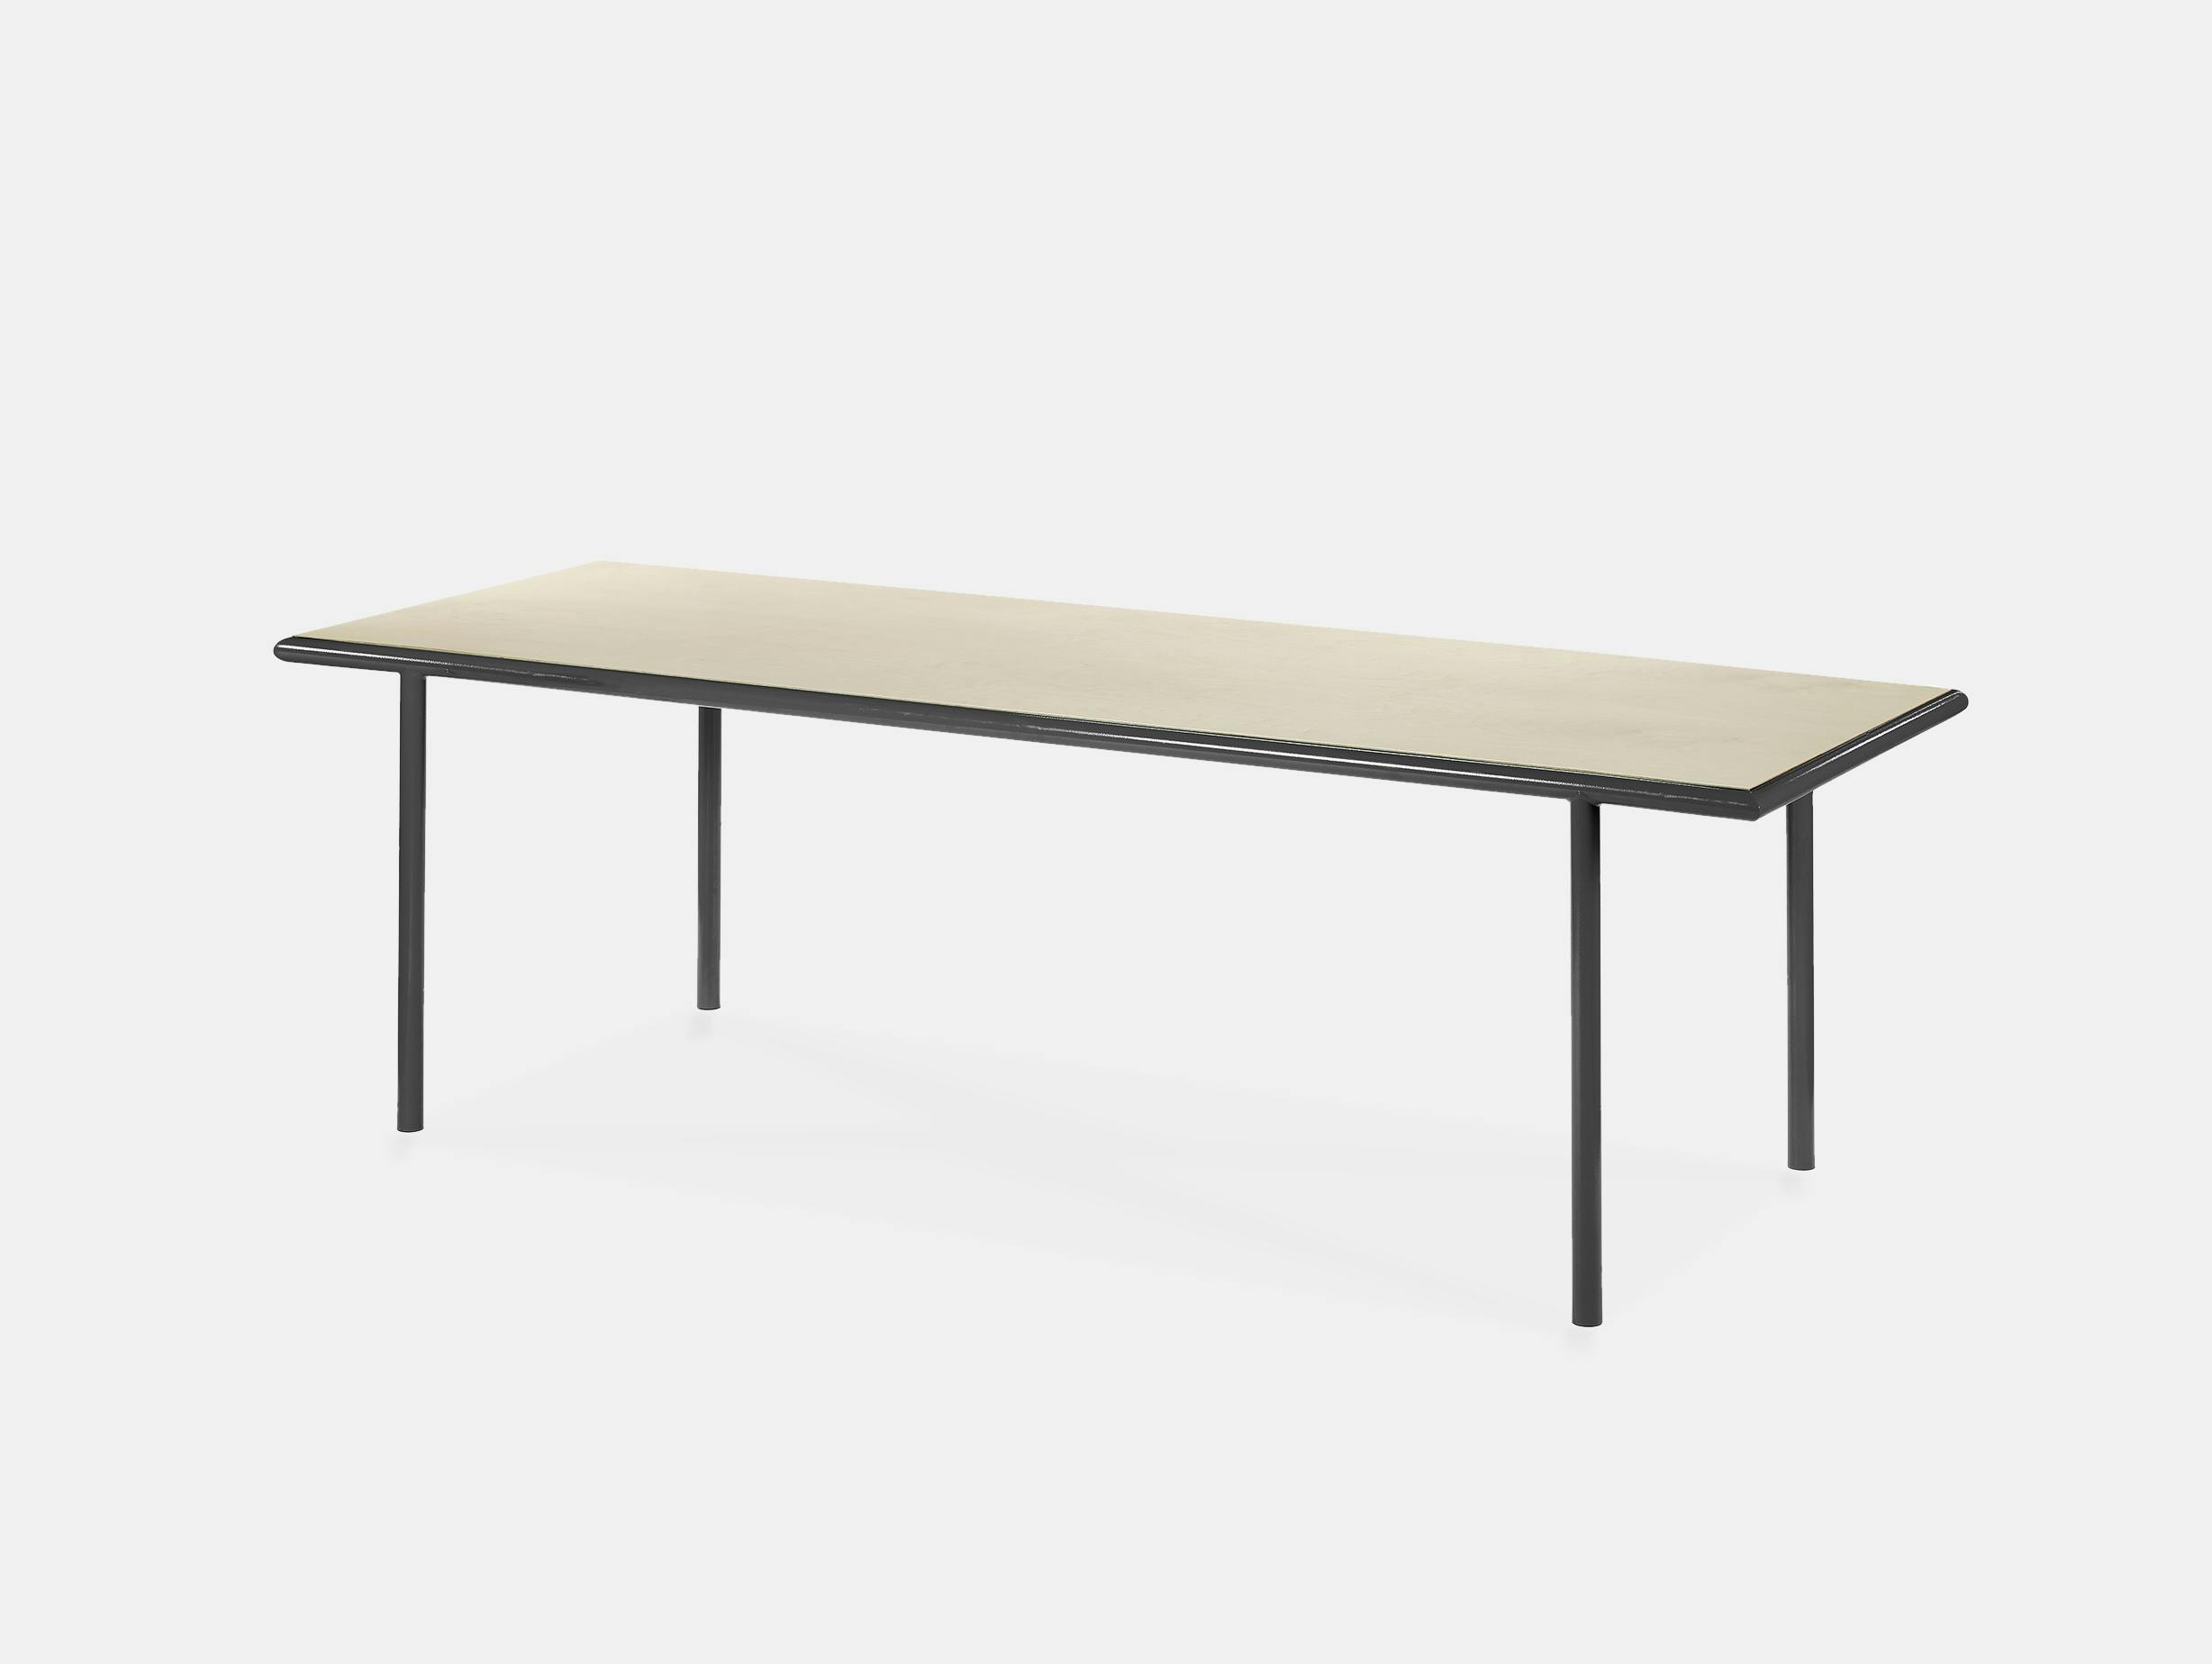 Muller van severen wooden table rectangular black birch